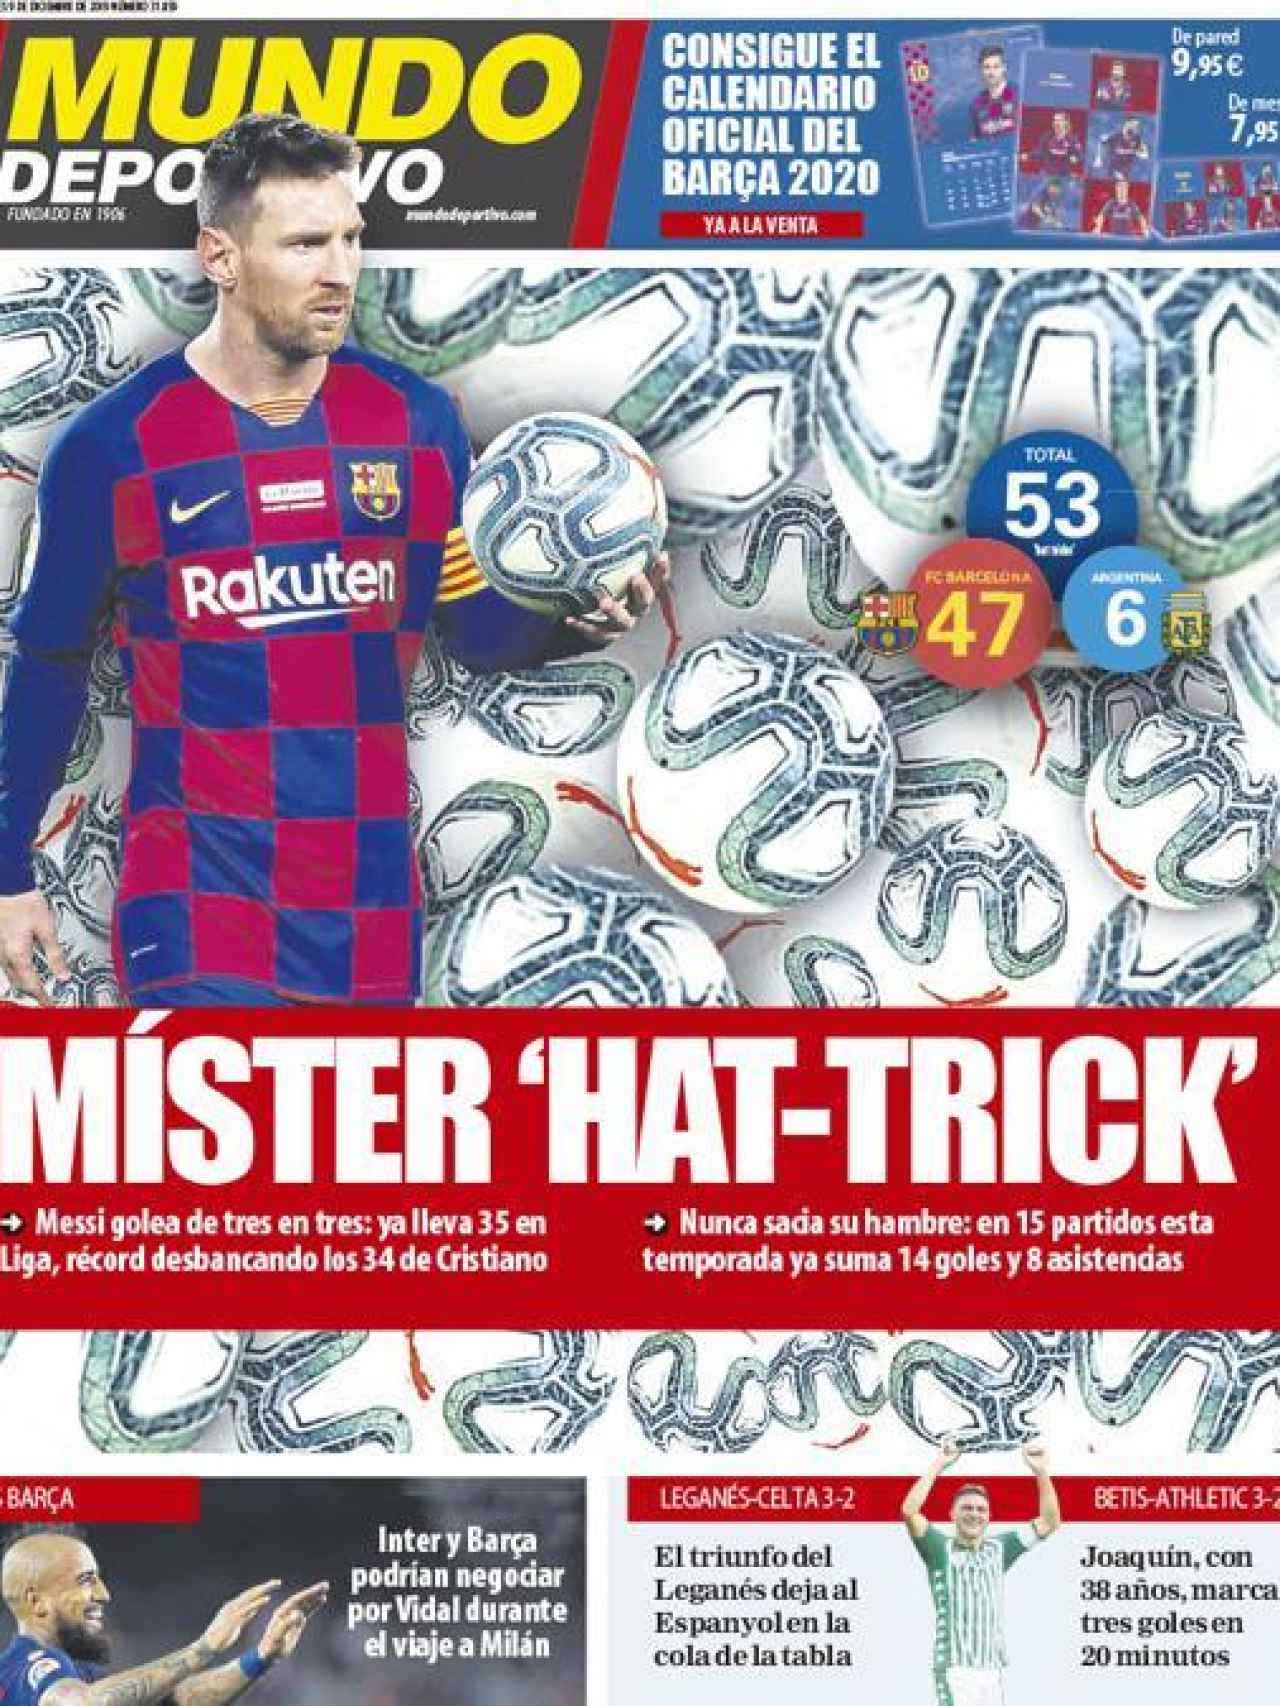 La portada del diario Mundo Deportivo (09/12/2019)